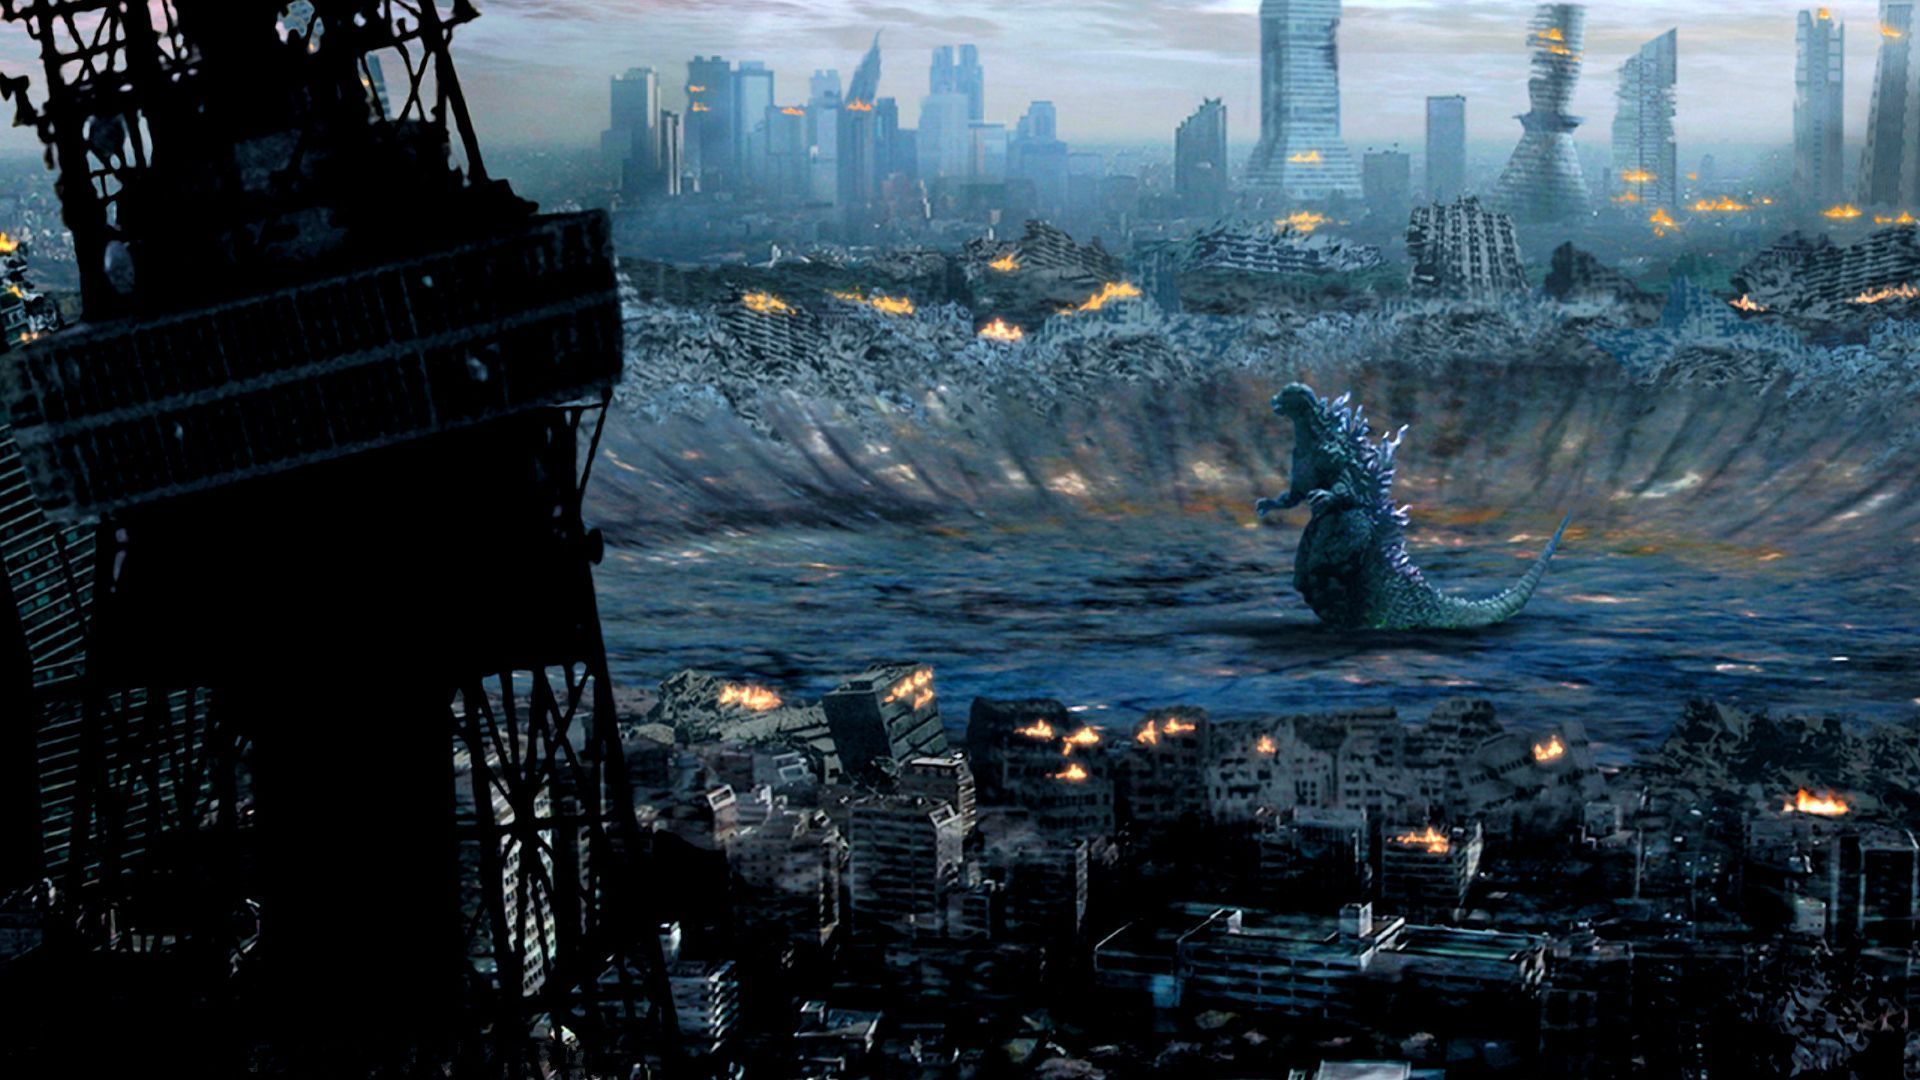 Godzilla goes booom. Godzilla wallpaper, Free wallpaper